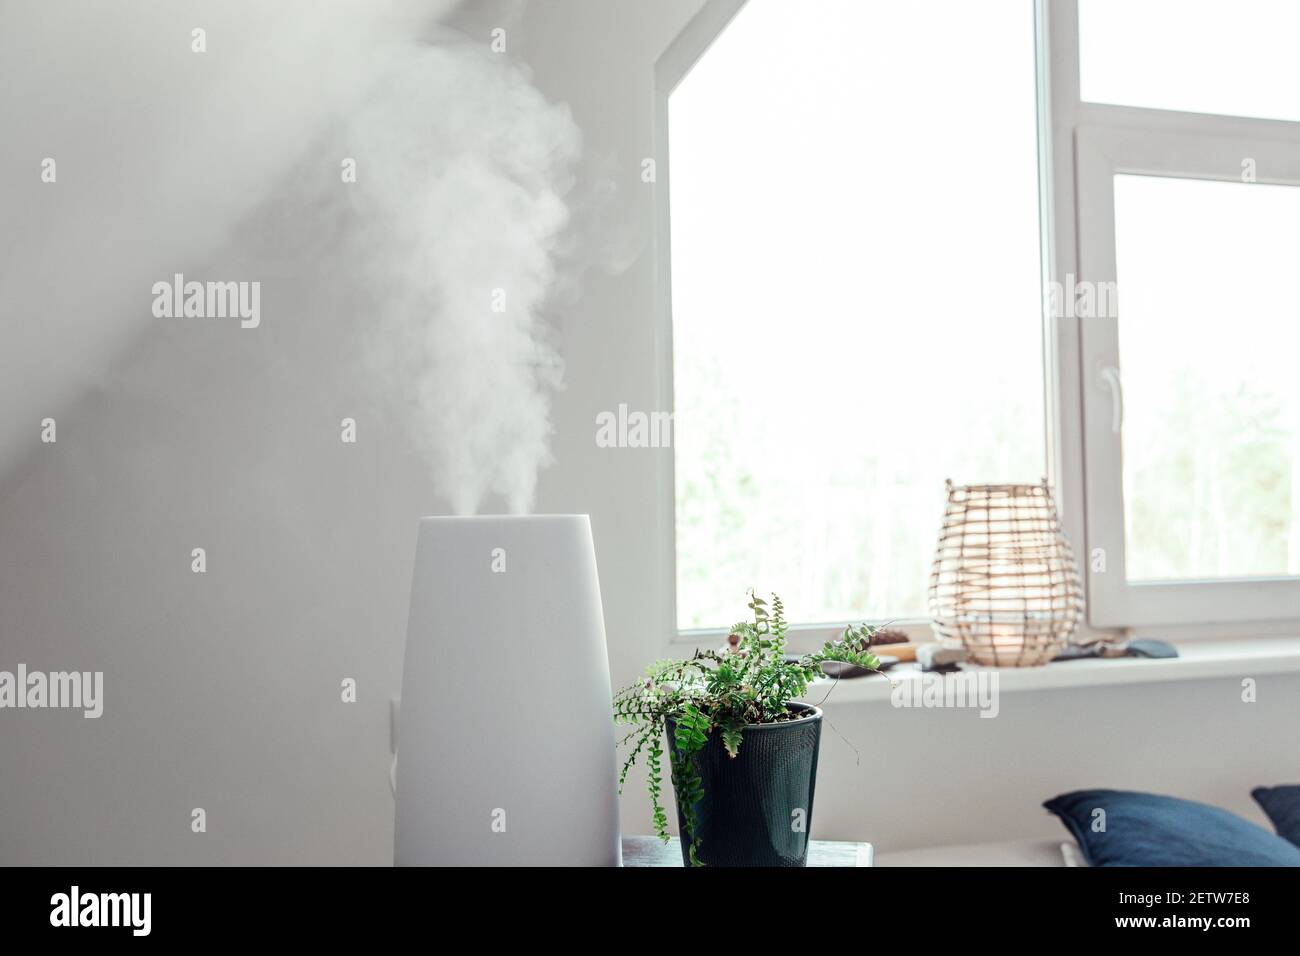 El humidificador añade agua al aire hirviendo agua en el vapor. Reduce el aire seco y el ambiente sano del hogar, lo que puede ayudar a aliviar la congestión nasal. Foto de stock